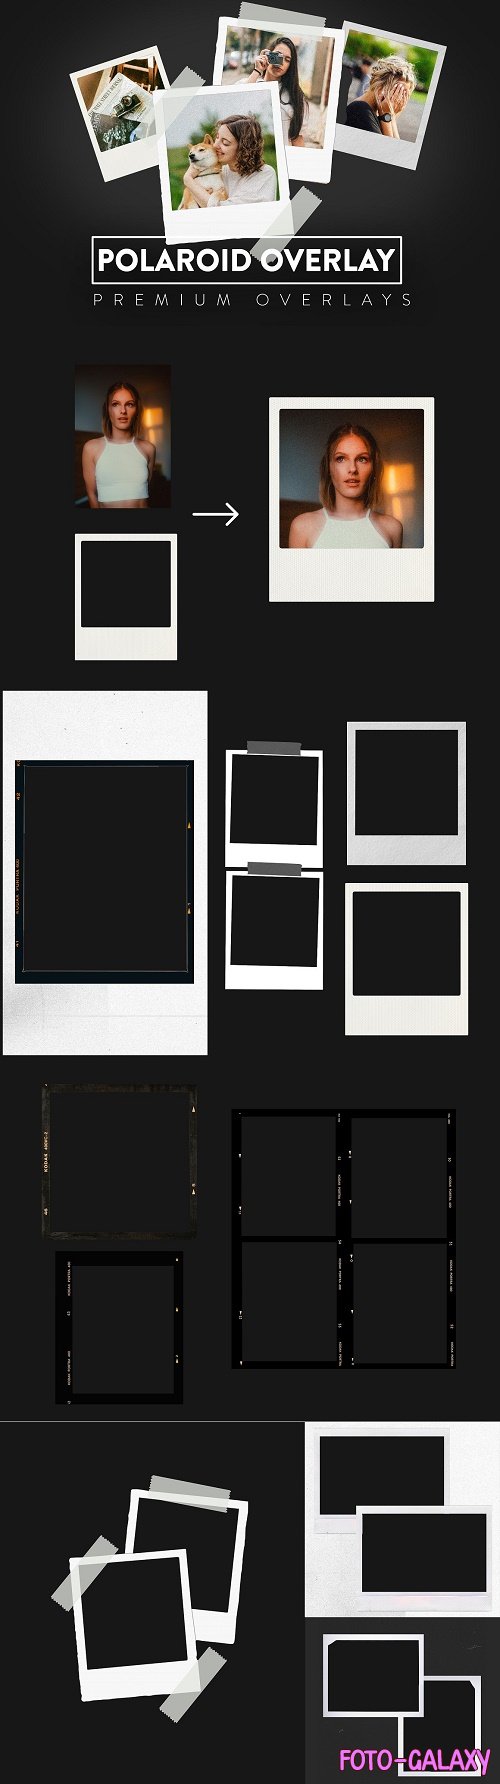 50 Polaroid Digital Overlay - 6274165 - Polaroid Frames